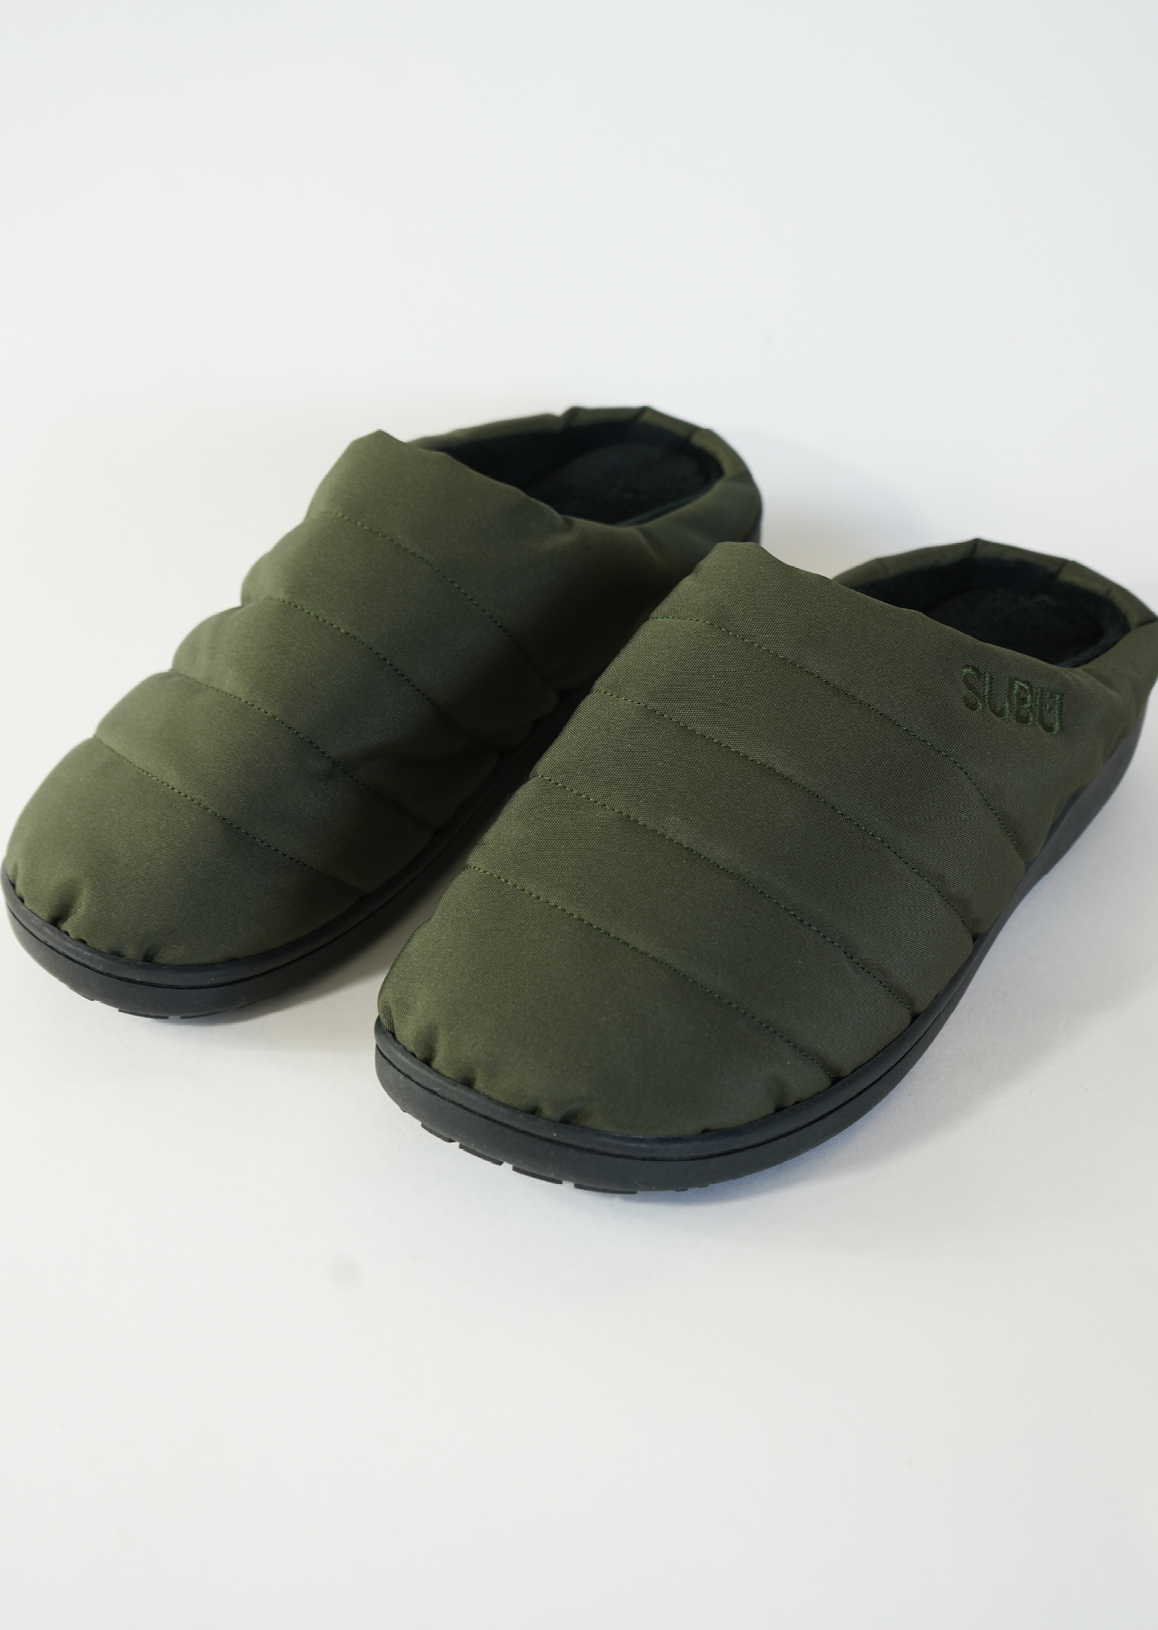 SUBU Indoor/ Outdoor Slippers